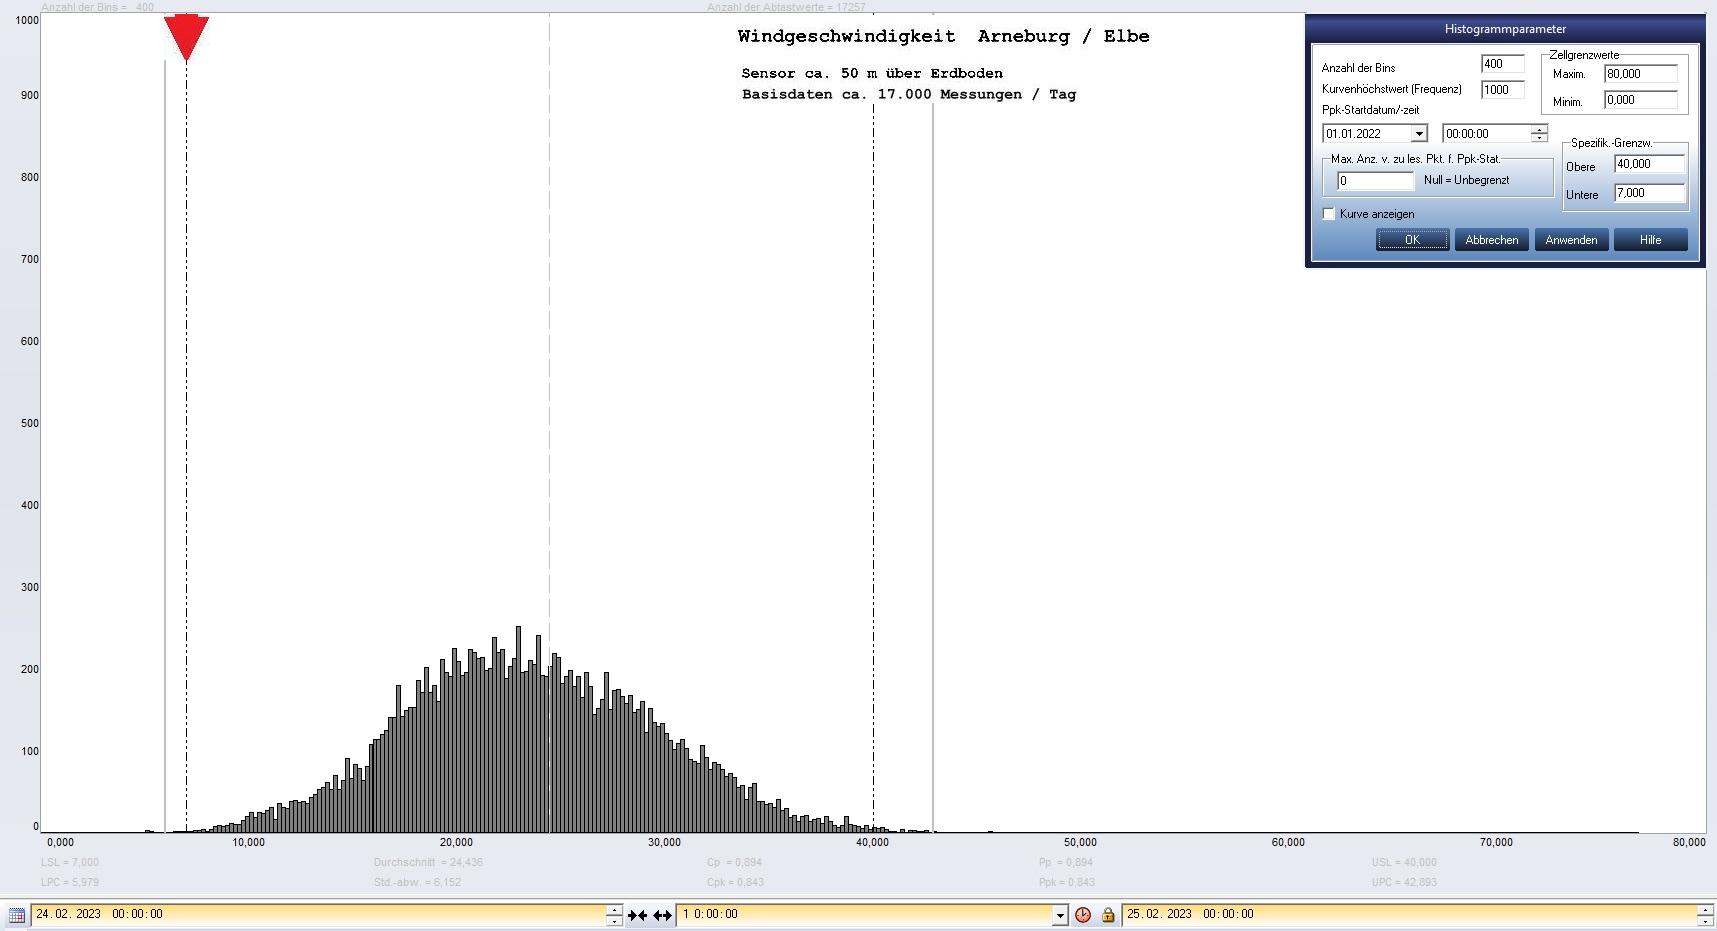 Arneburg Tages-Histogramm Winddaten, 24.02.2023
  Histogramm, Sensor auf Gebude, ca. 50 m ber Erdboden, Basis: 5s-Aufzeichnung